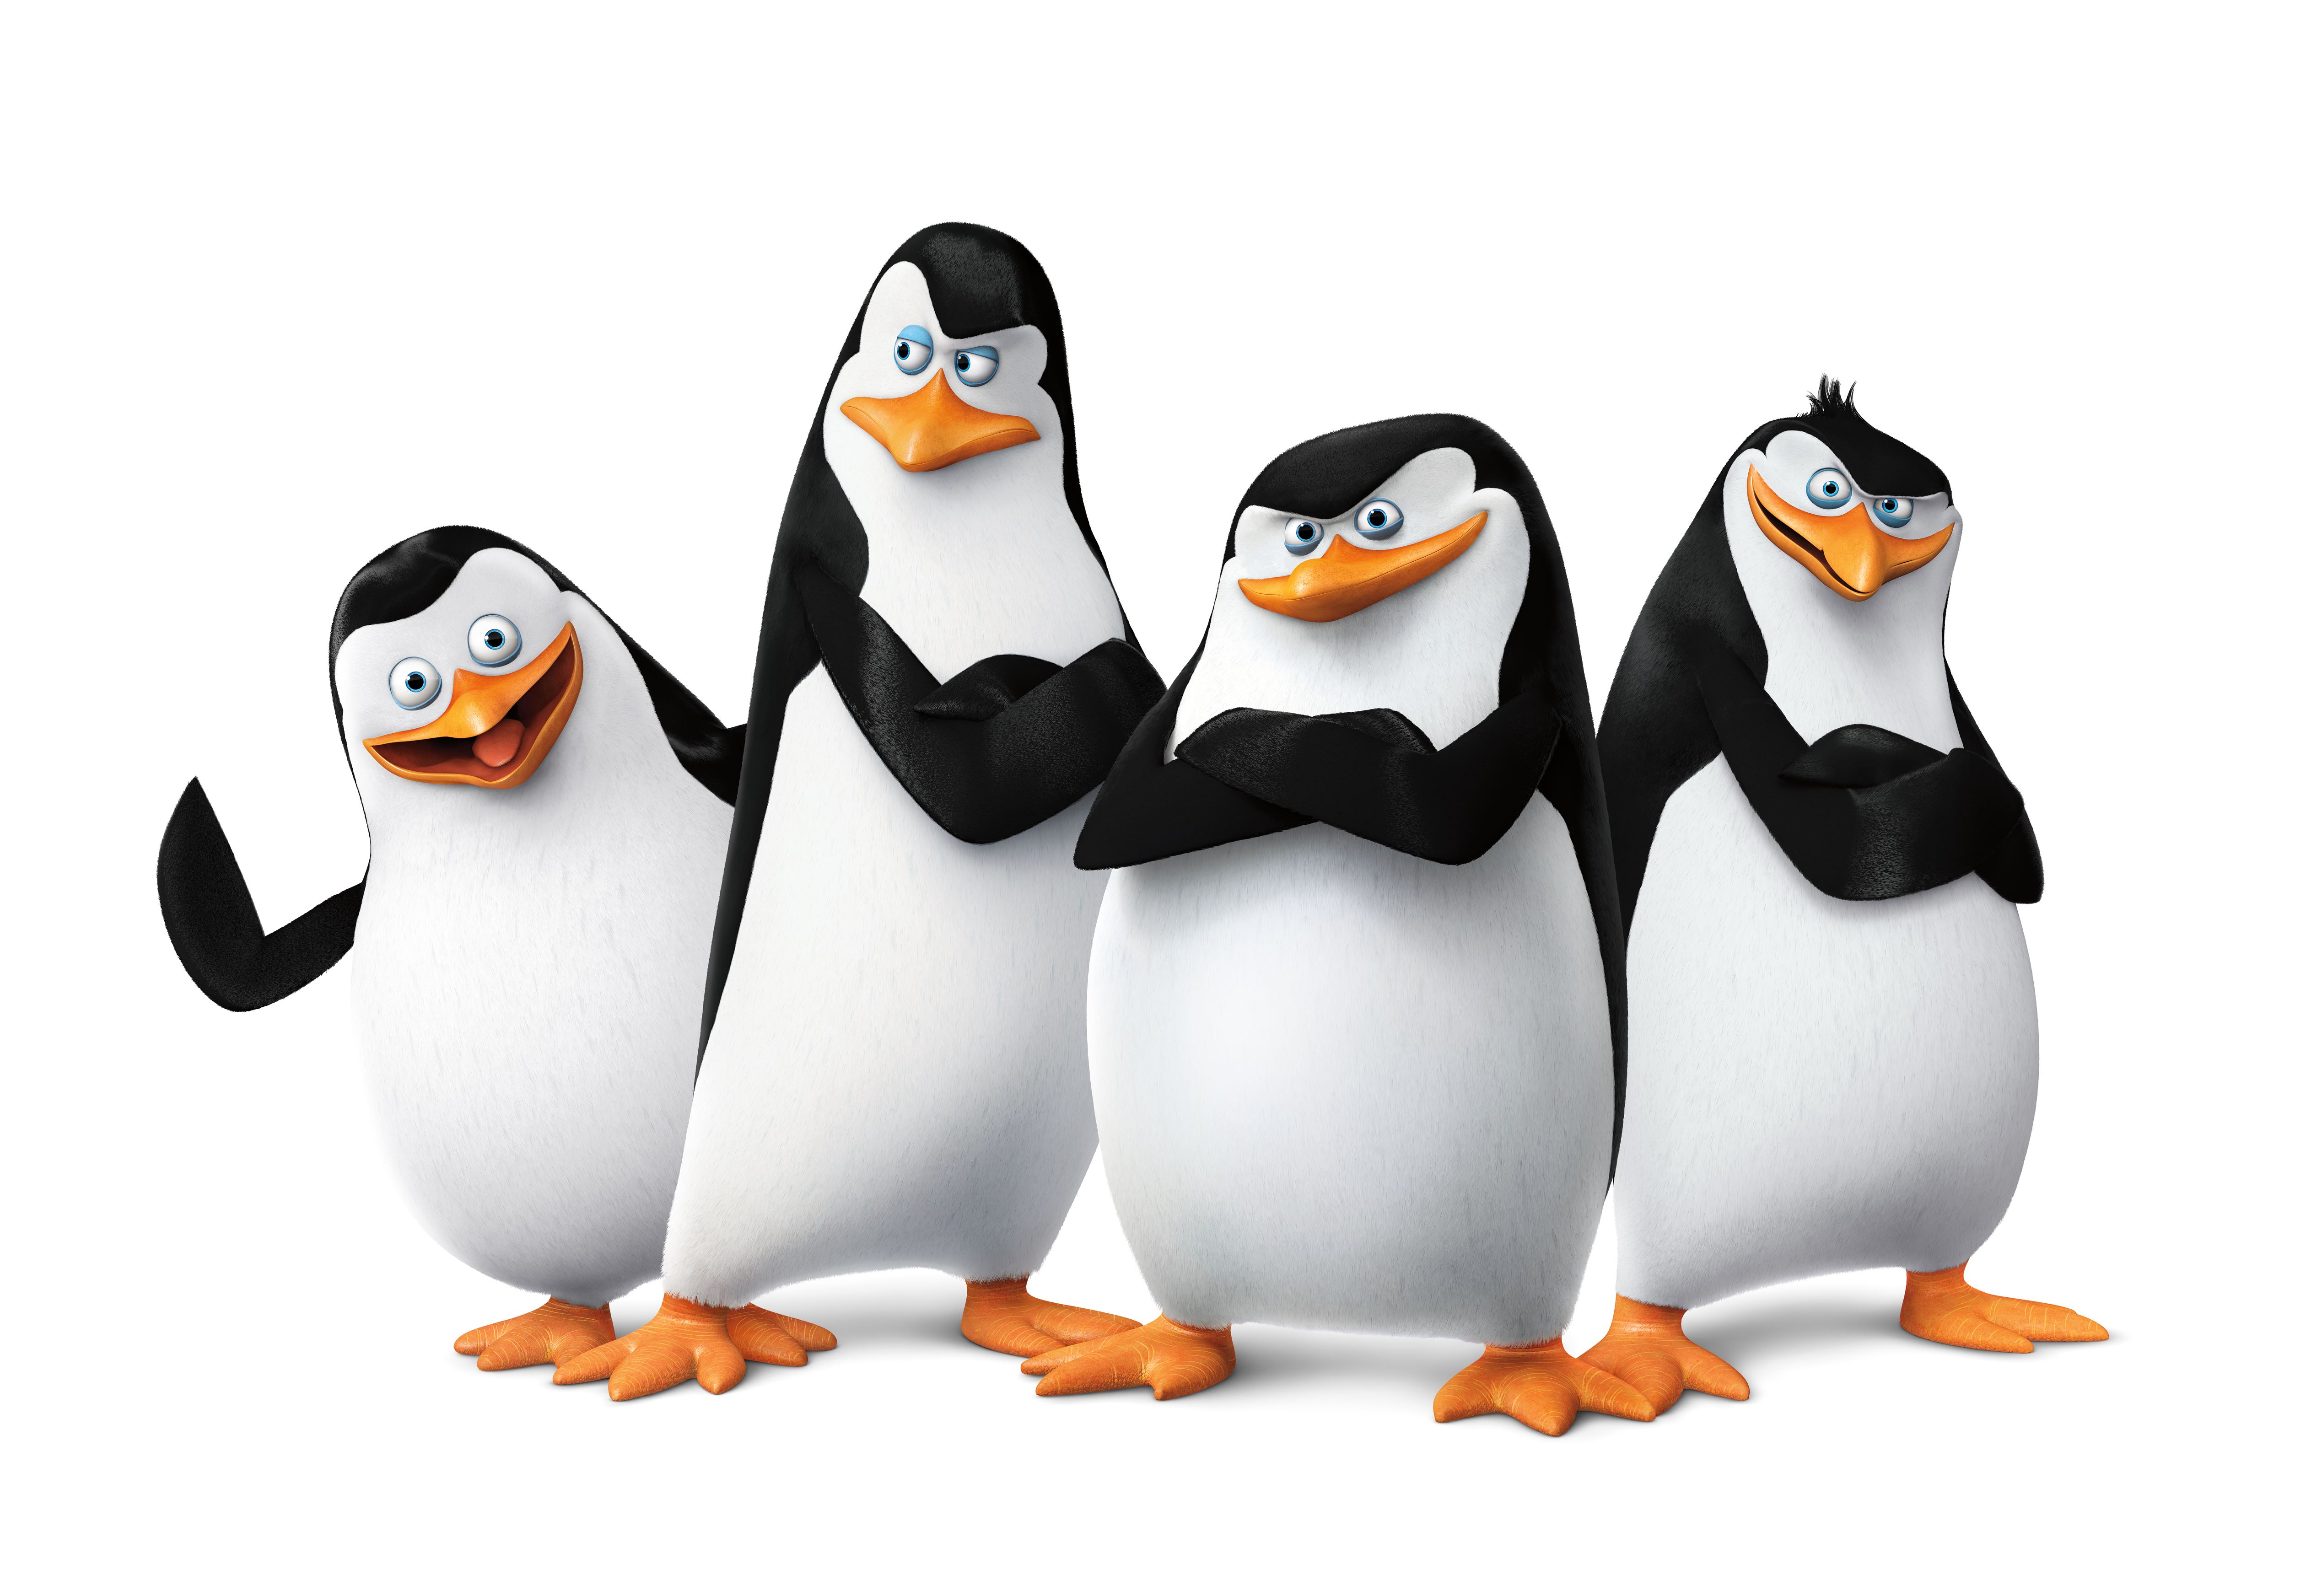 Скачать обои Пингвины Мадагаскара: Фильм на телефон бесплатно